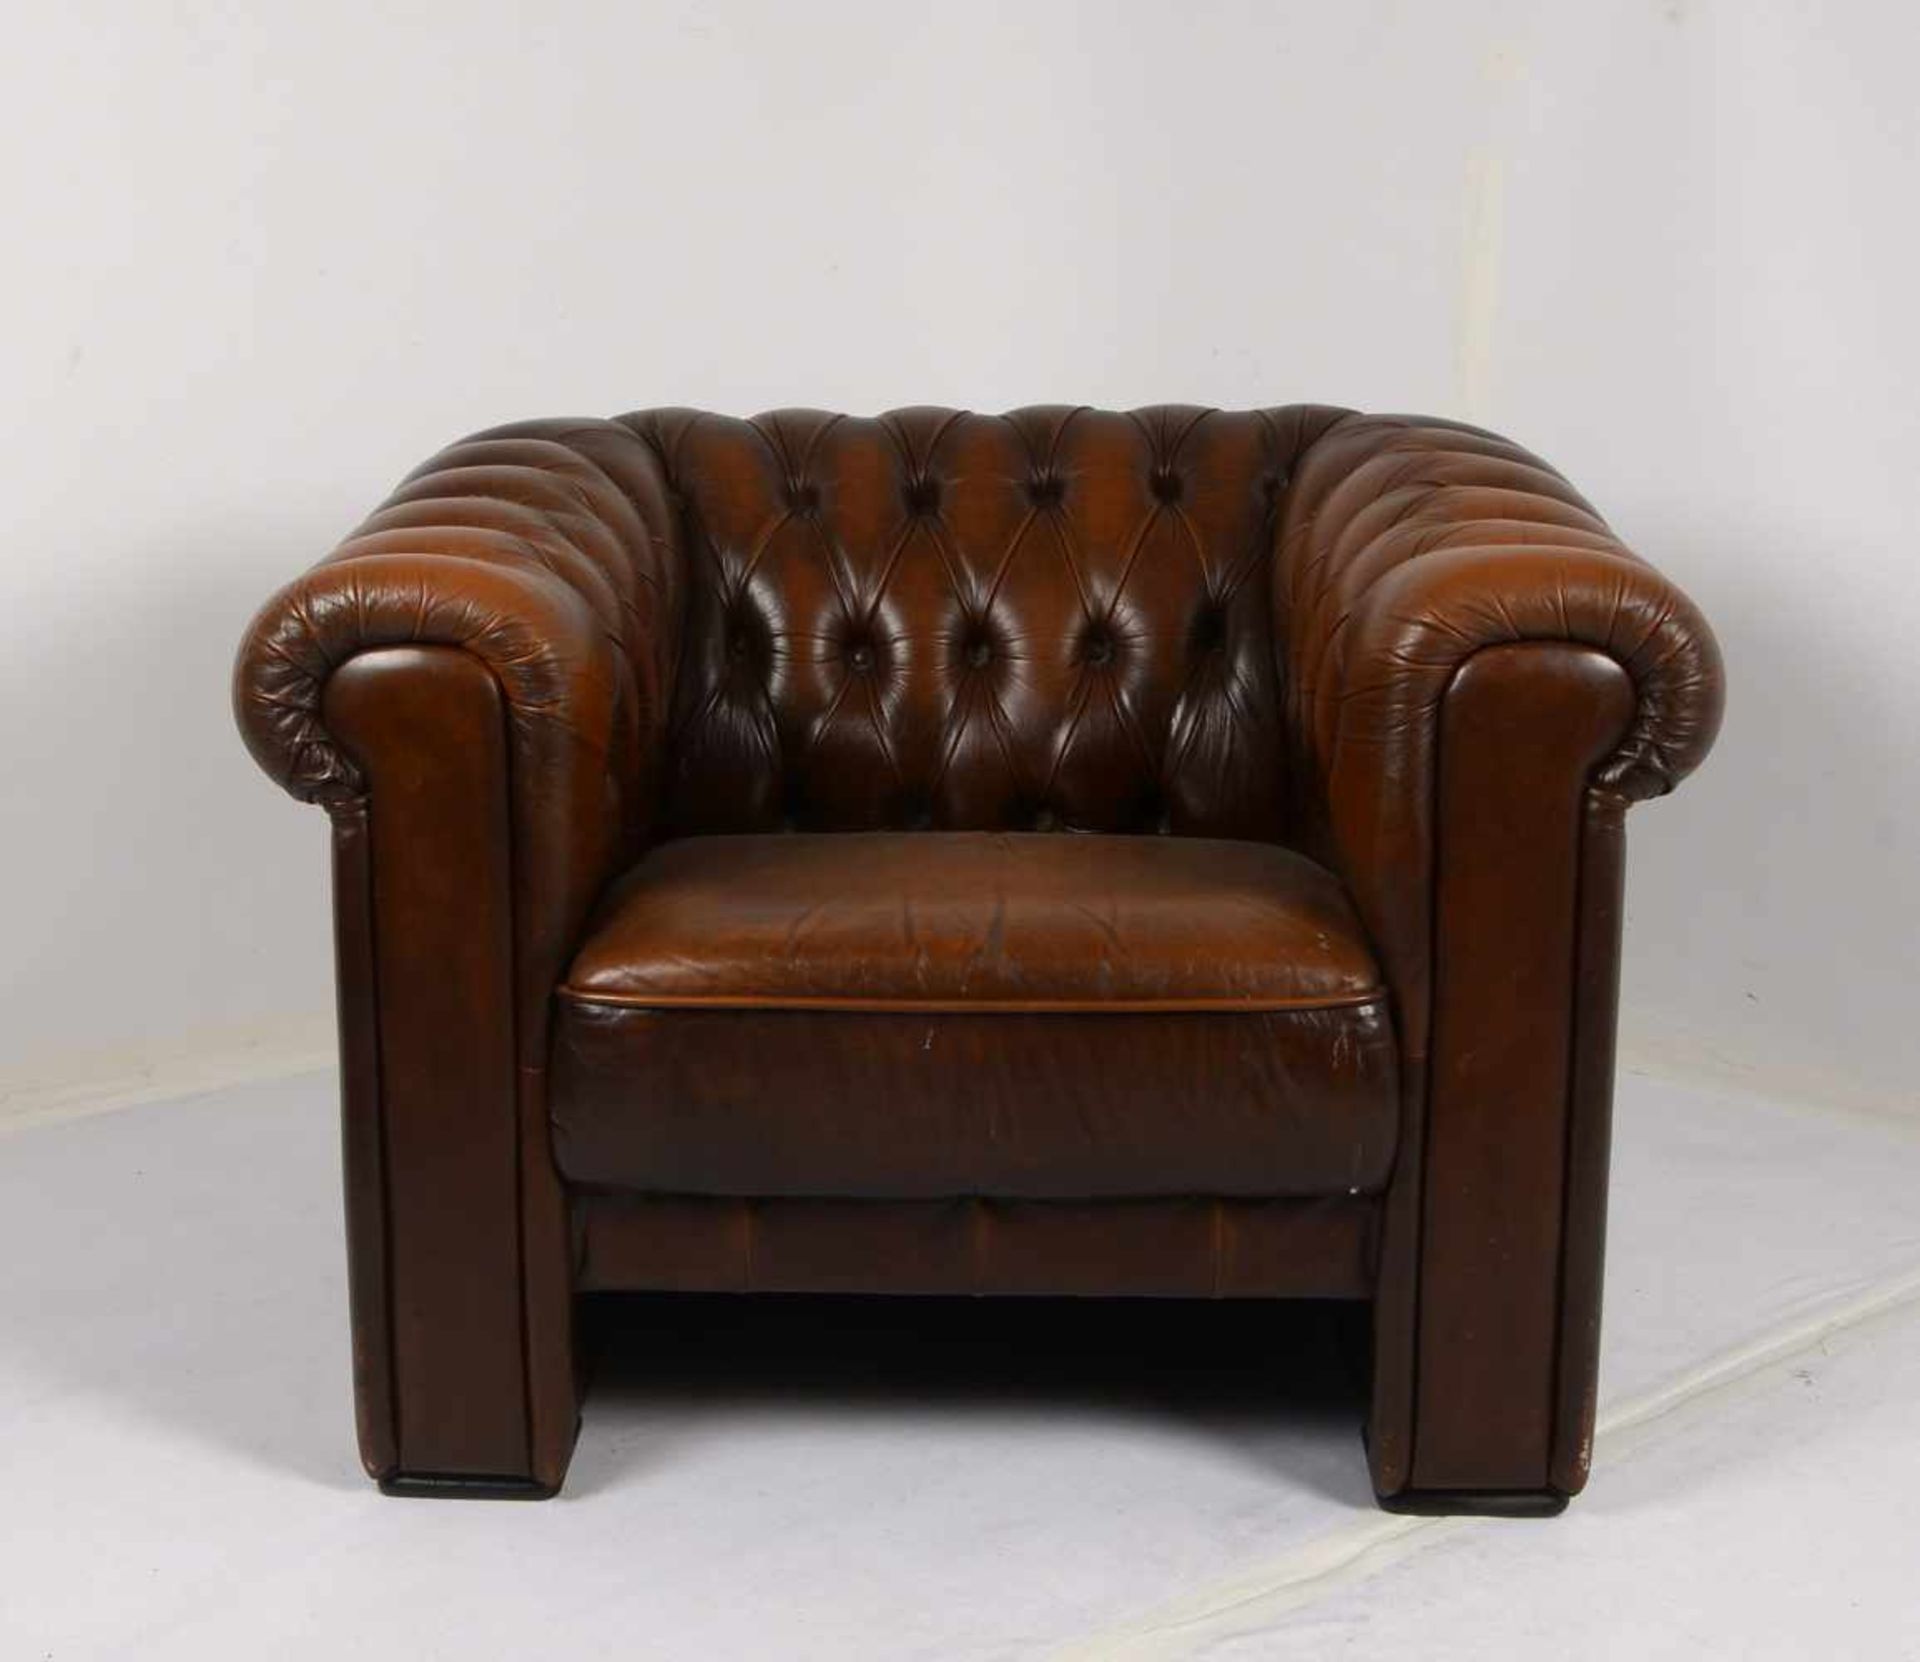 Chesterfield-Sofa/Zweisitzer, Polsterung aus braunem Leder/geknüpft, in gutem Erhaltungszustand;